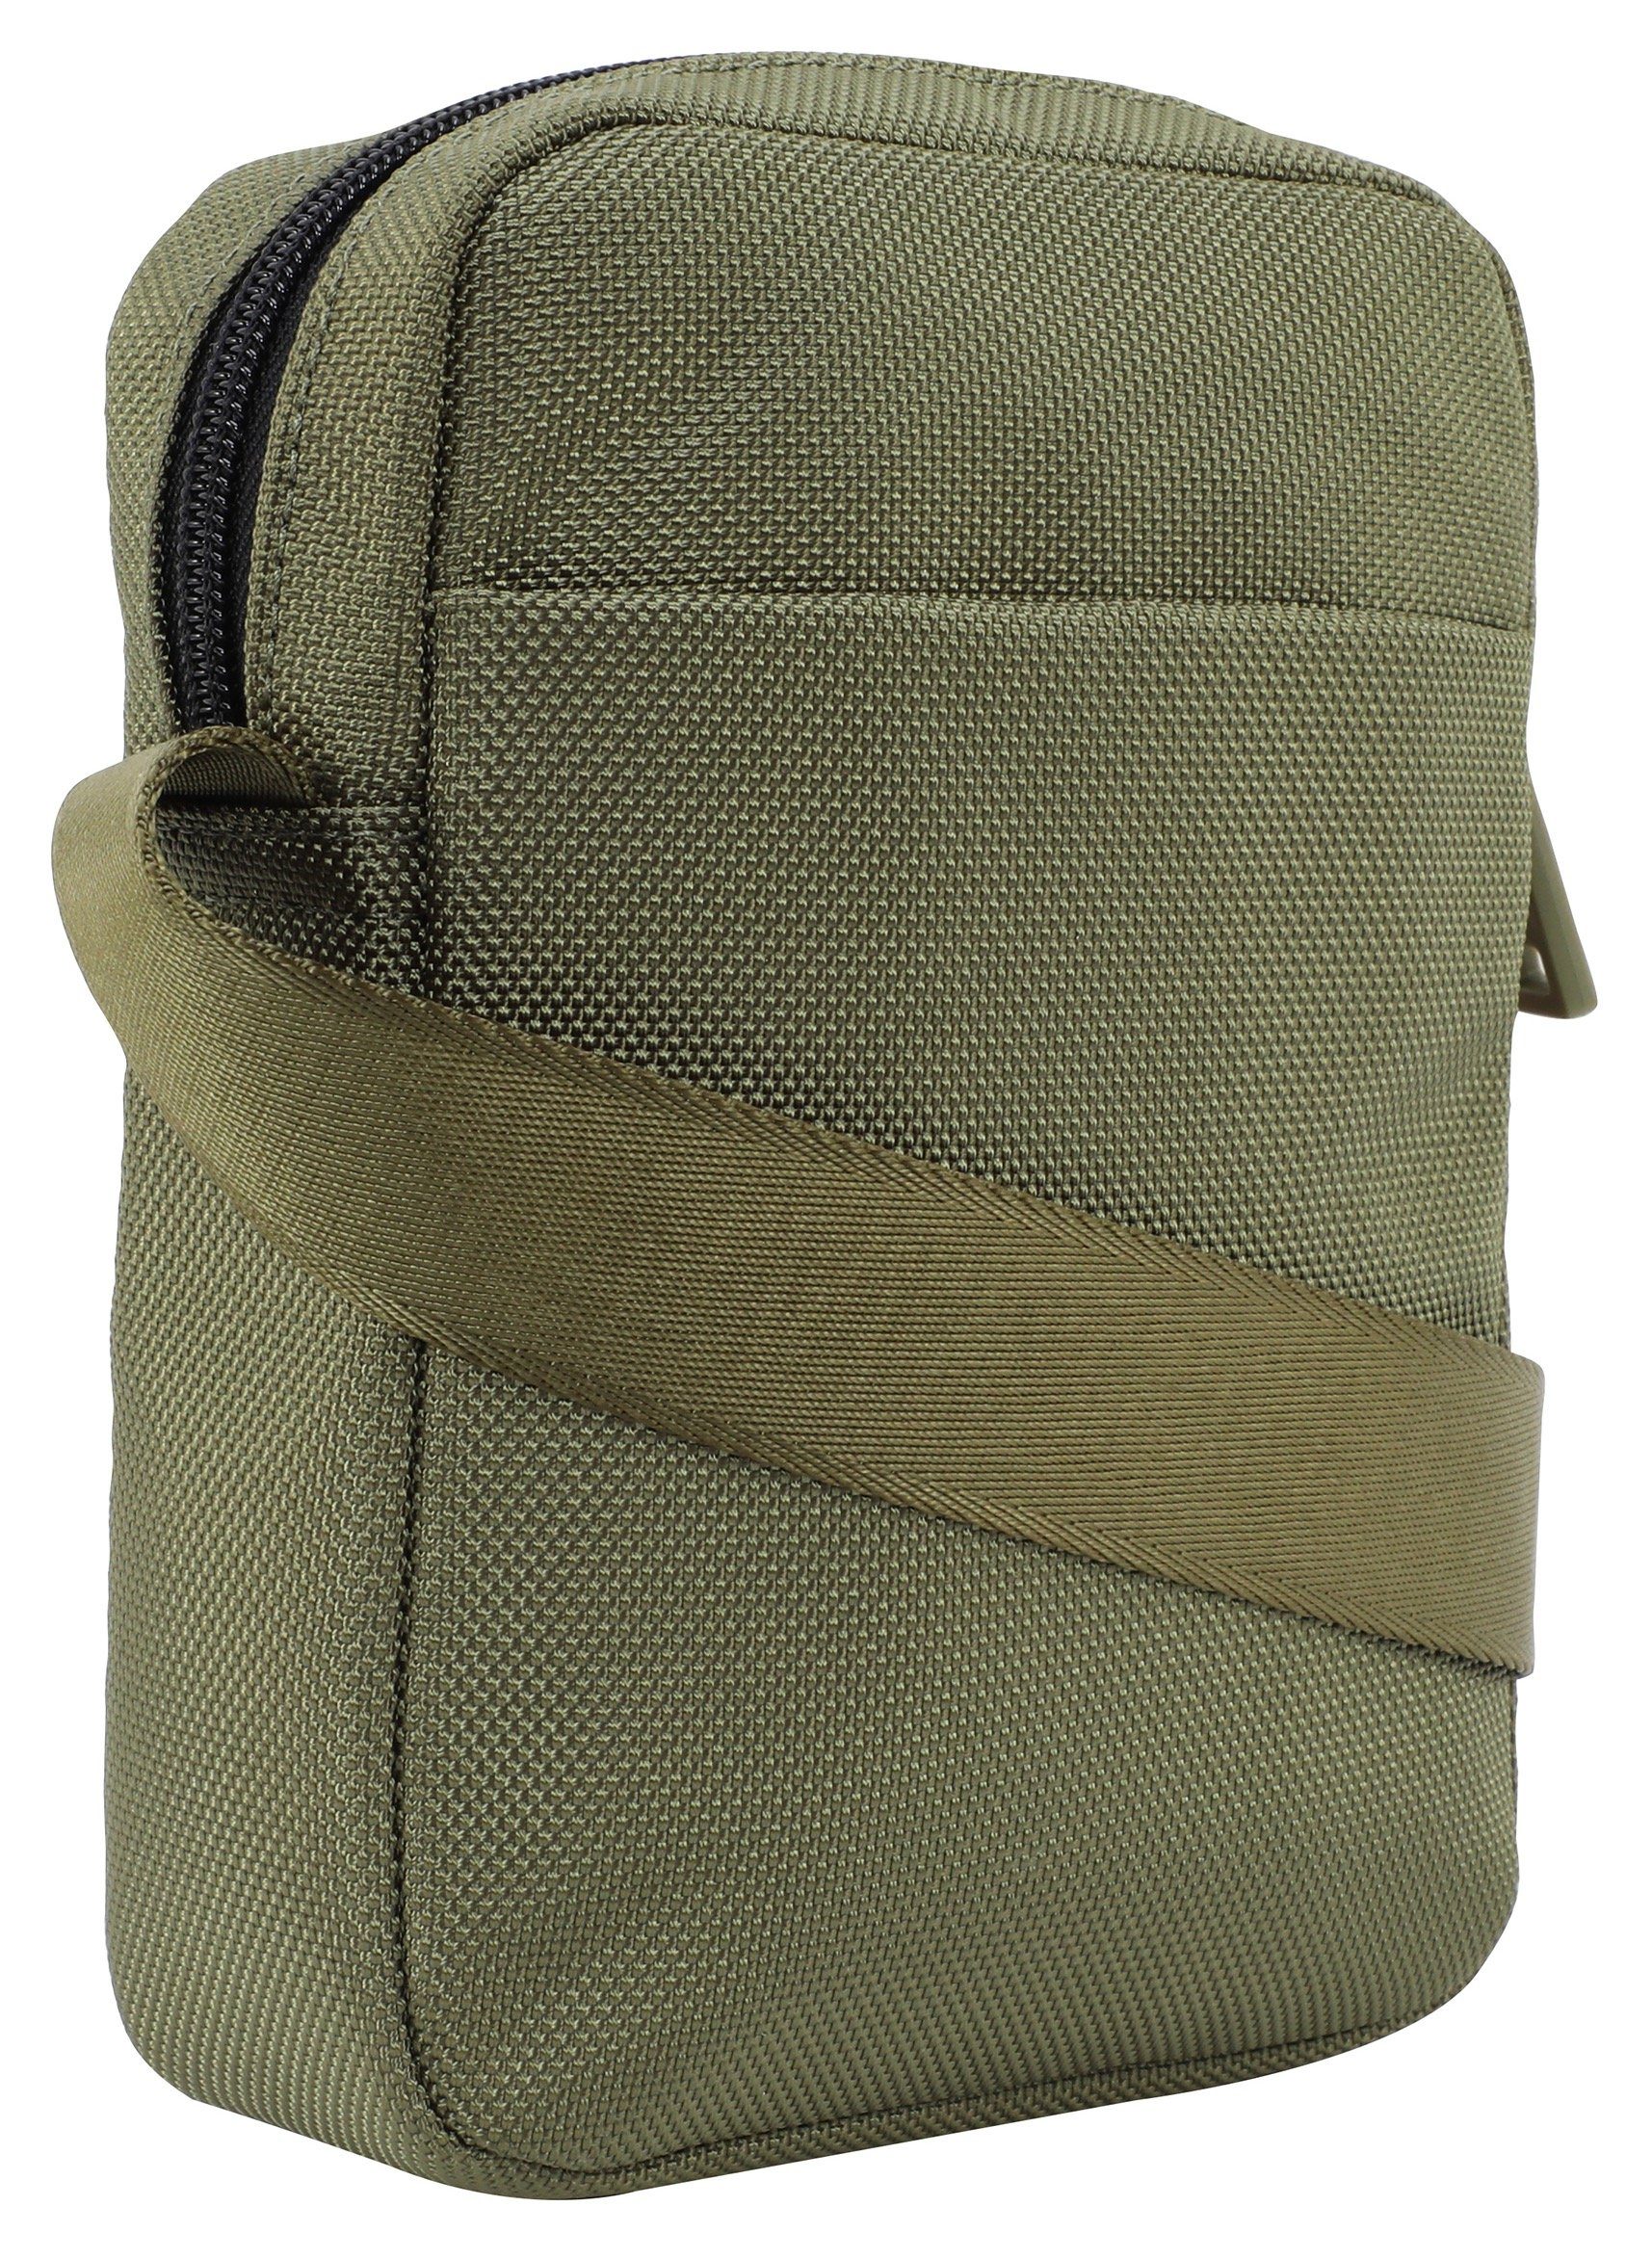 rafael shoulderbag praktischen Jeans xsvz, modica im Design Joop dunkelgrün Umhängetasche